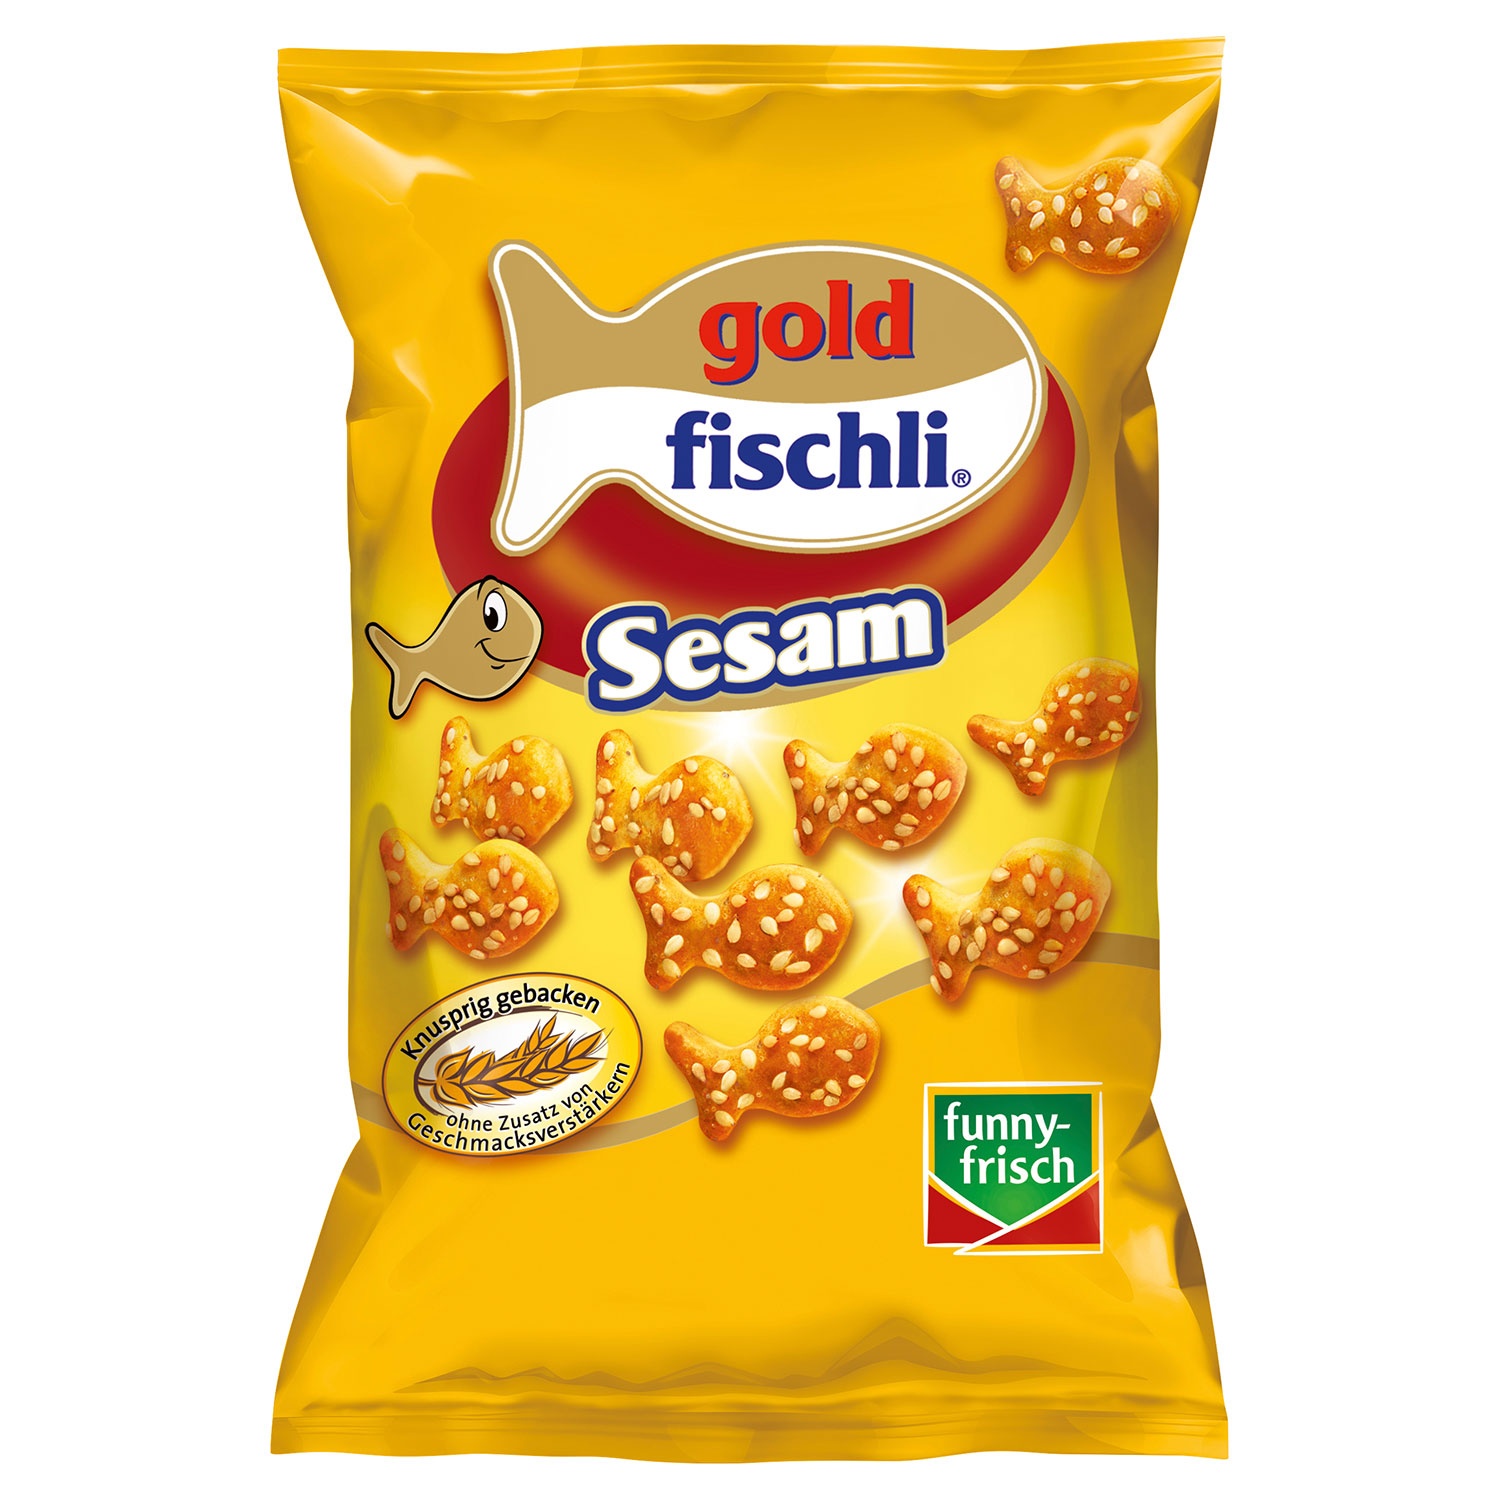 FUNNY-FRISCH goldfischli 100 g